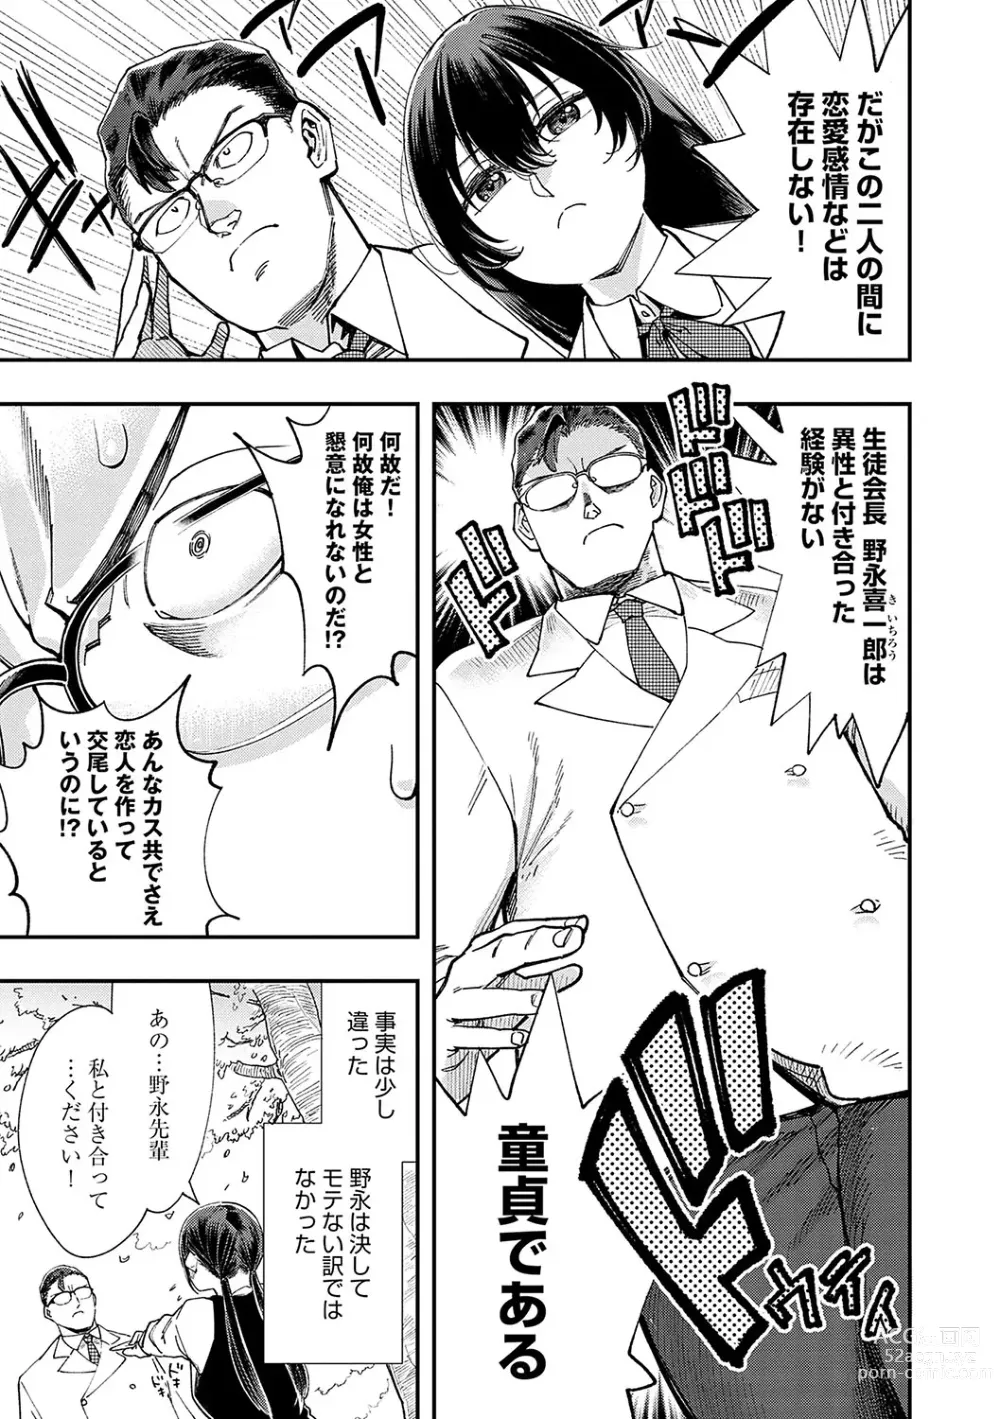 Page 6 of manga Kashikoi Oppai